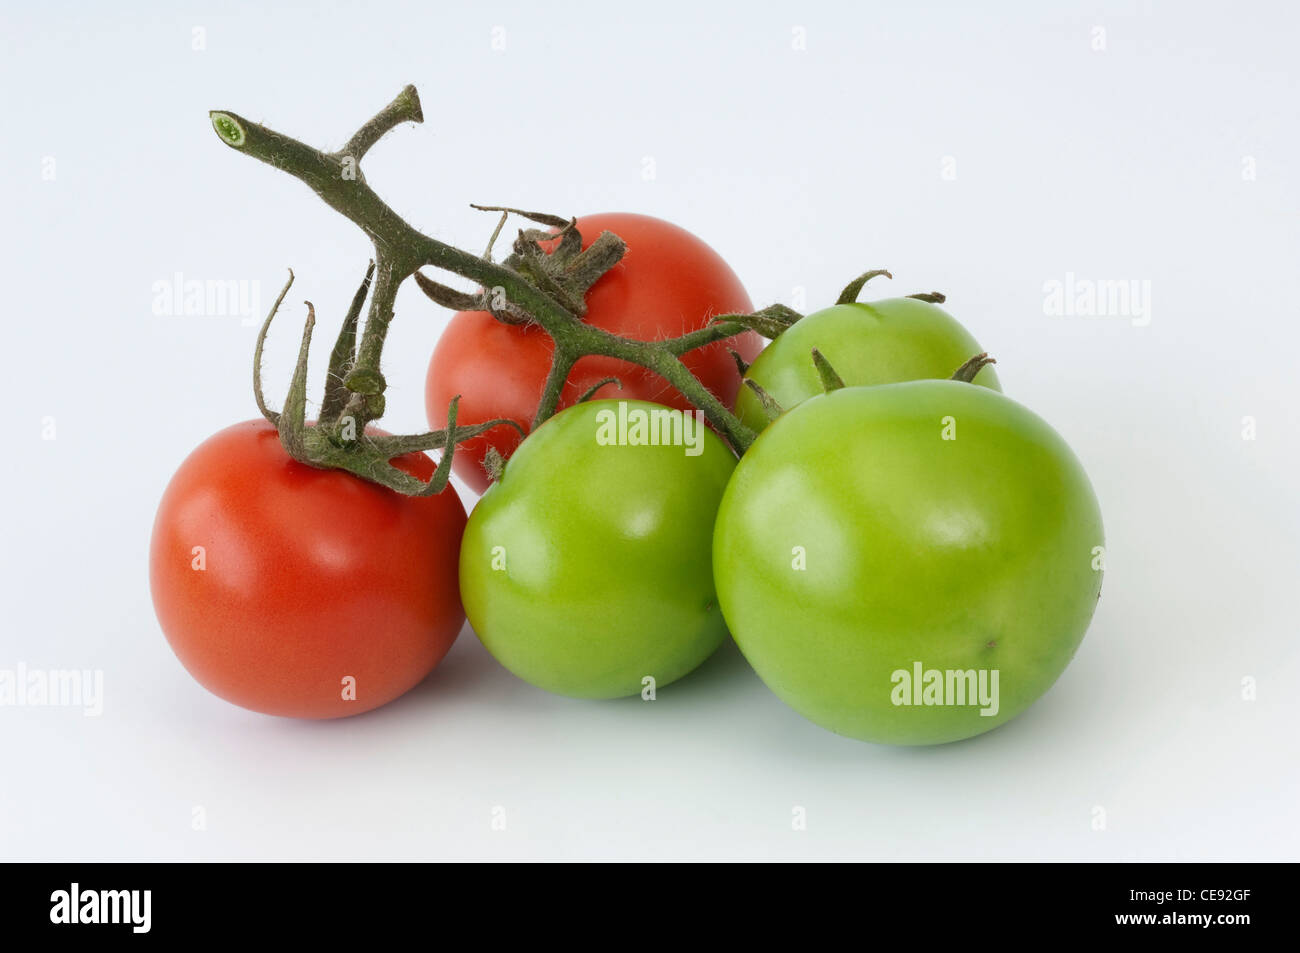 Tomate (Lycopersicon esculentum). Fruto en diferentes etapas de maduración. Studio picture contra un fondo blanco. Foto de stock